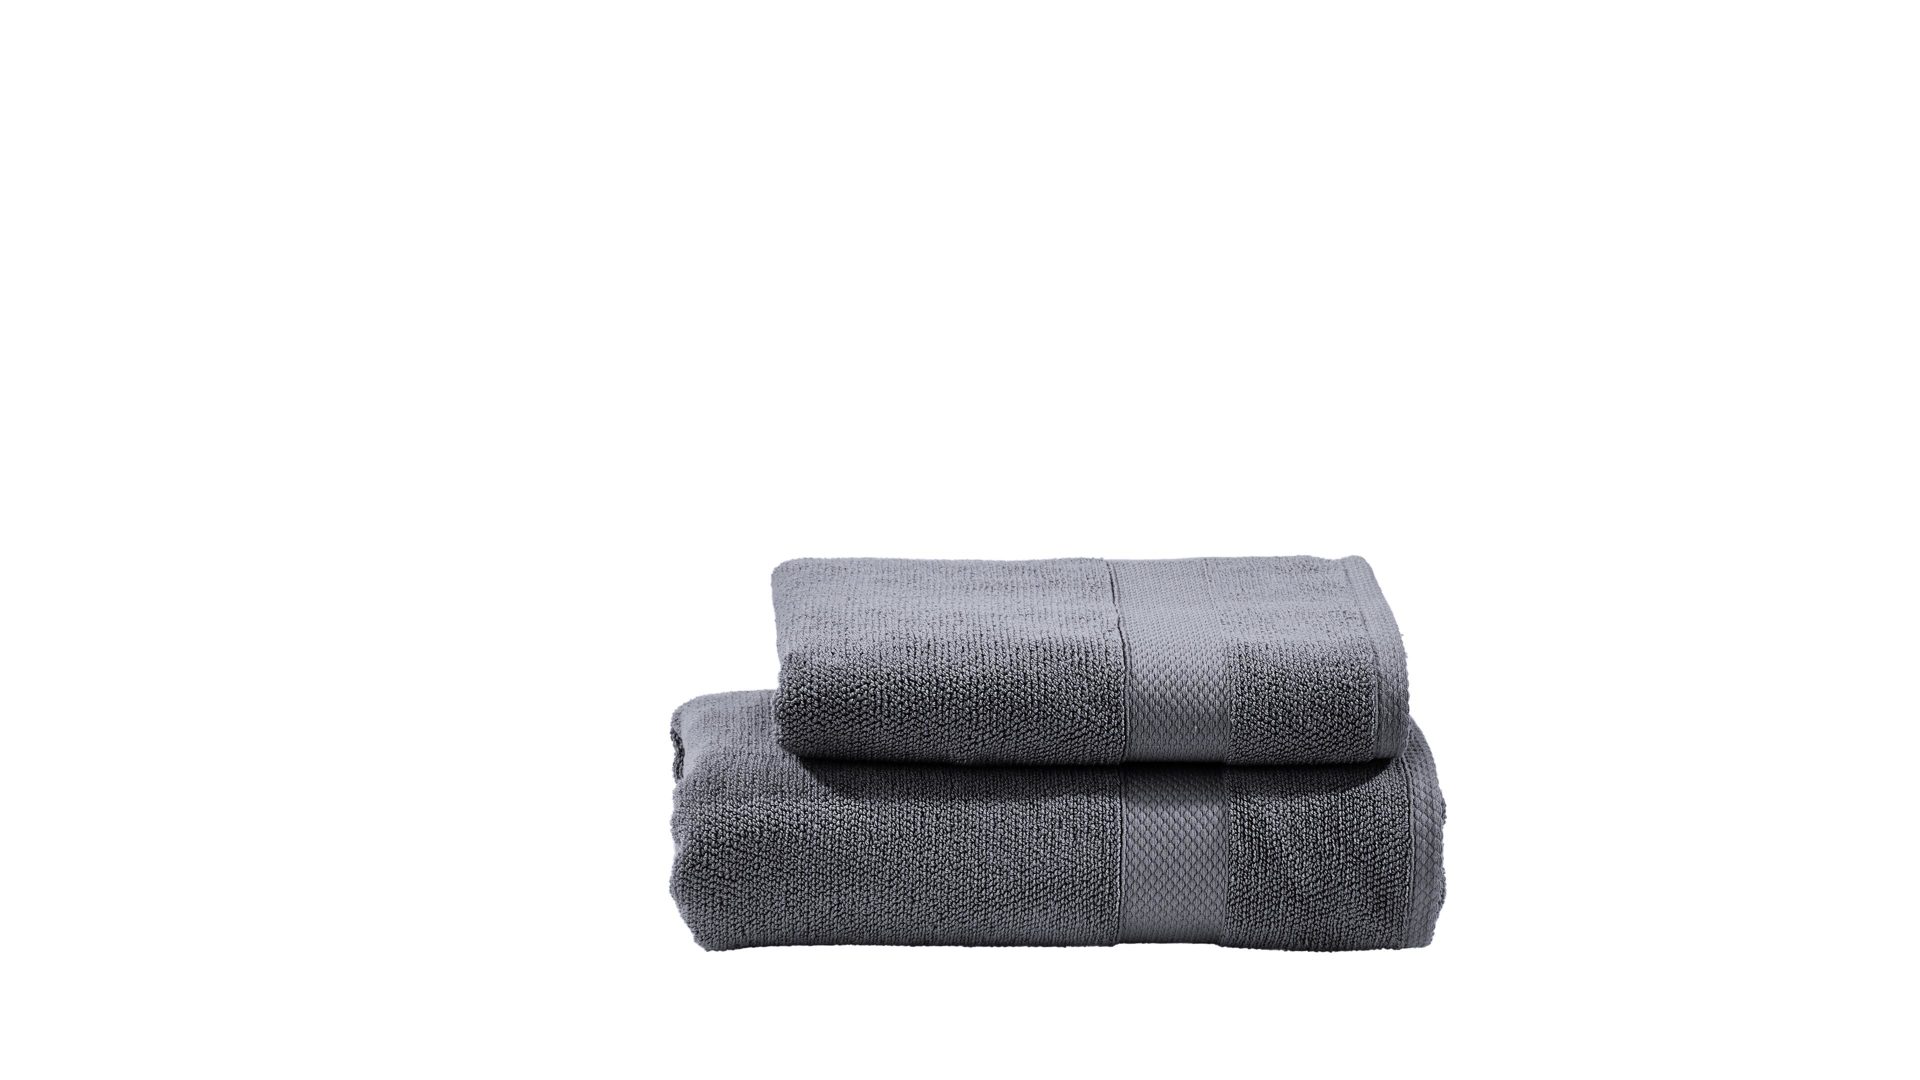 Handtuch-Set Done® be different aus Stoff in Anthrazit DONE® Handtuch-Set Deluxe - exklusive Heimtextilien anthrazitfarbene Baumwolle – zweiteilig